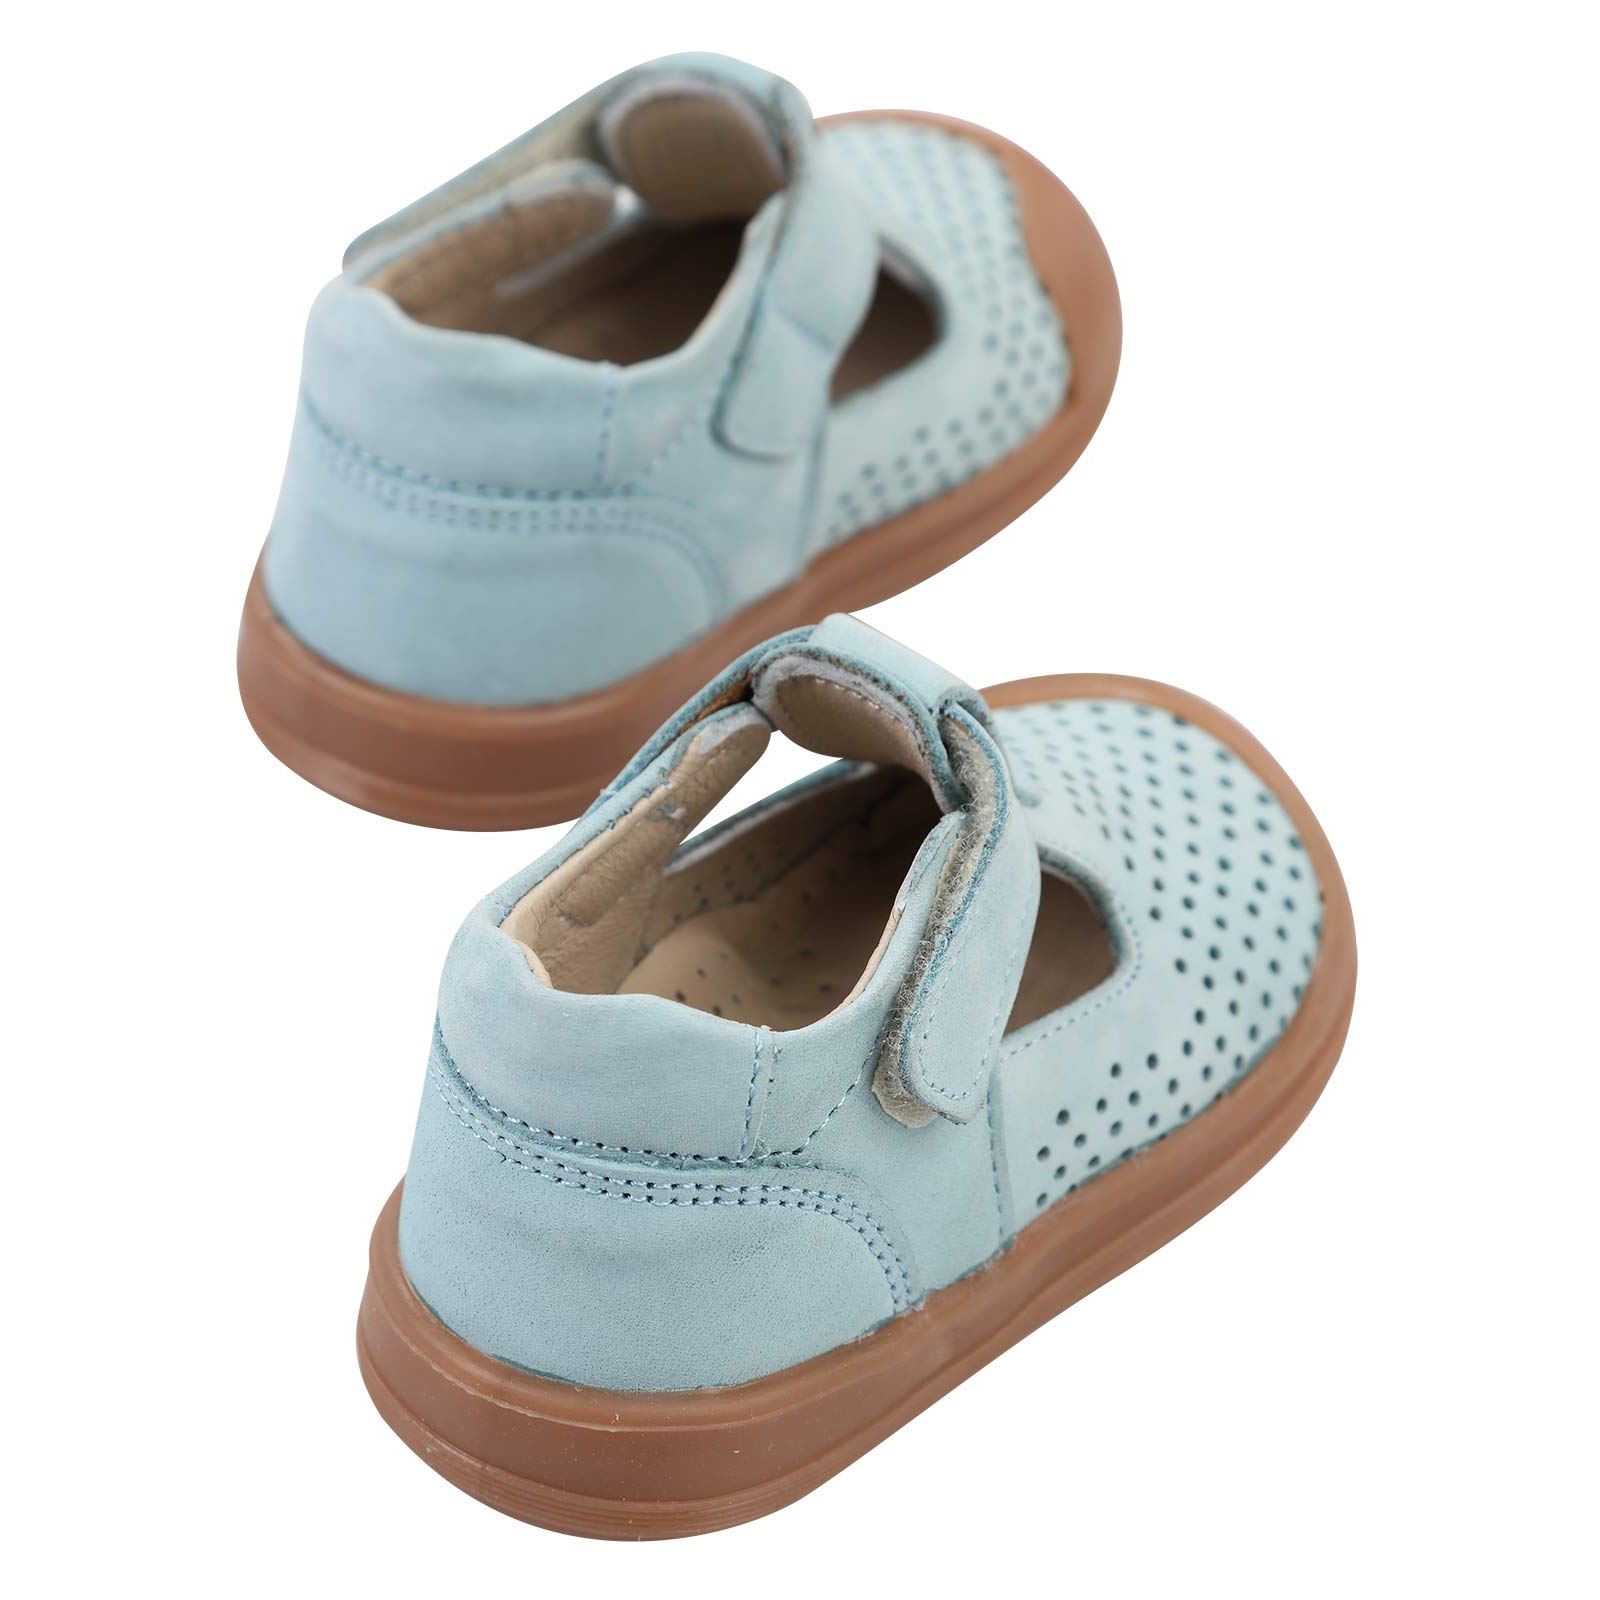 Civil Baby Erkek Bebek İlk Adım Ayakkabısı 19-21 Numara Mavi